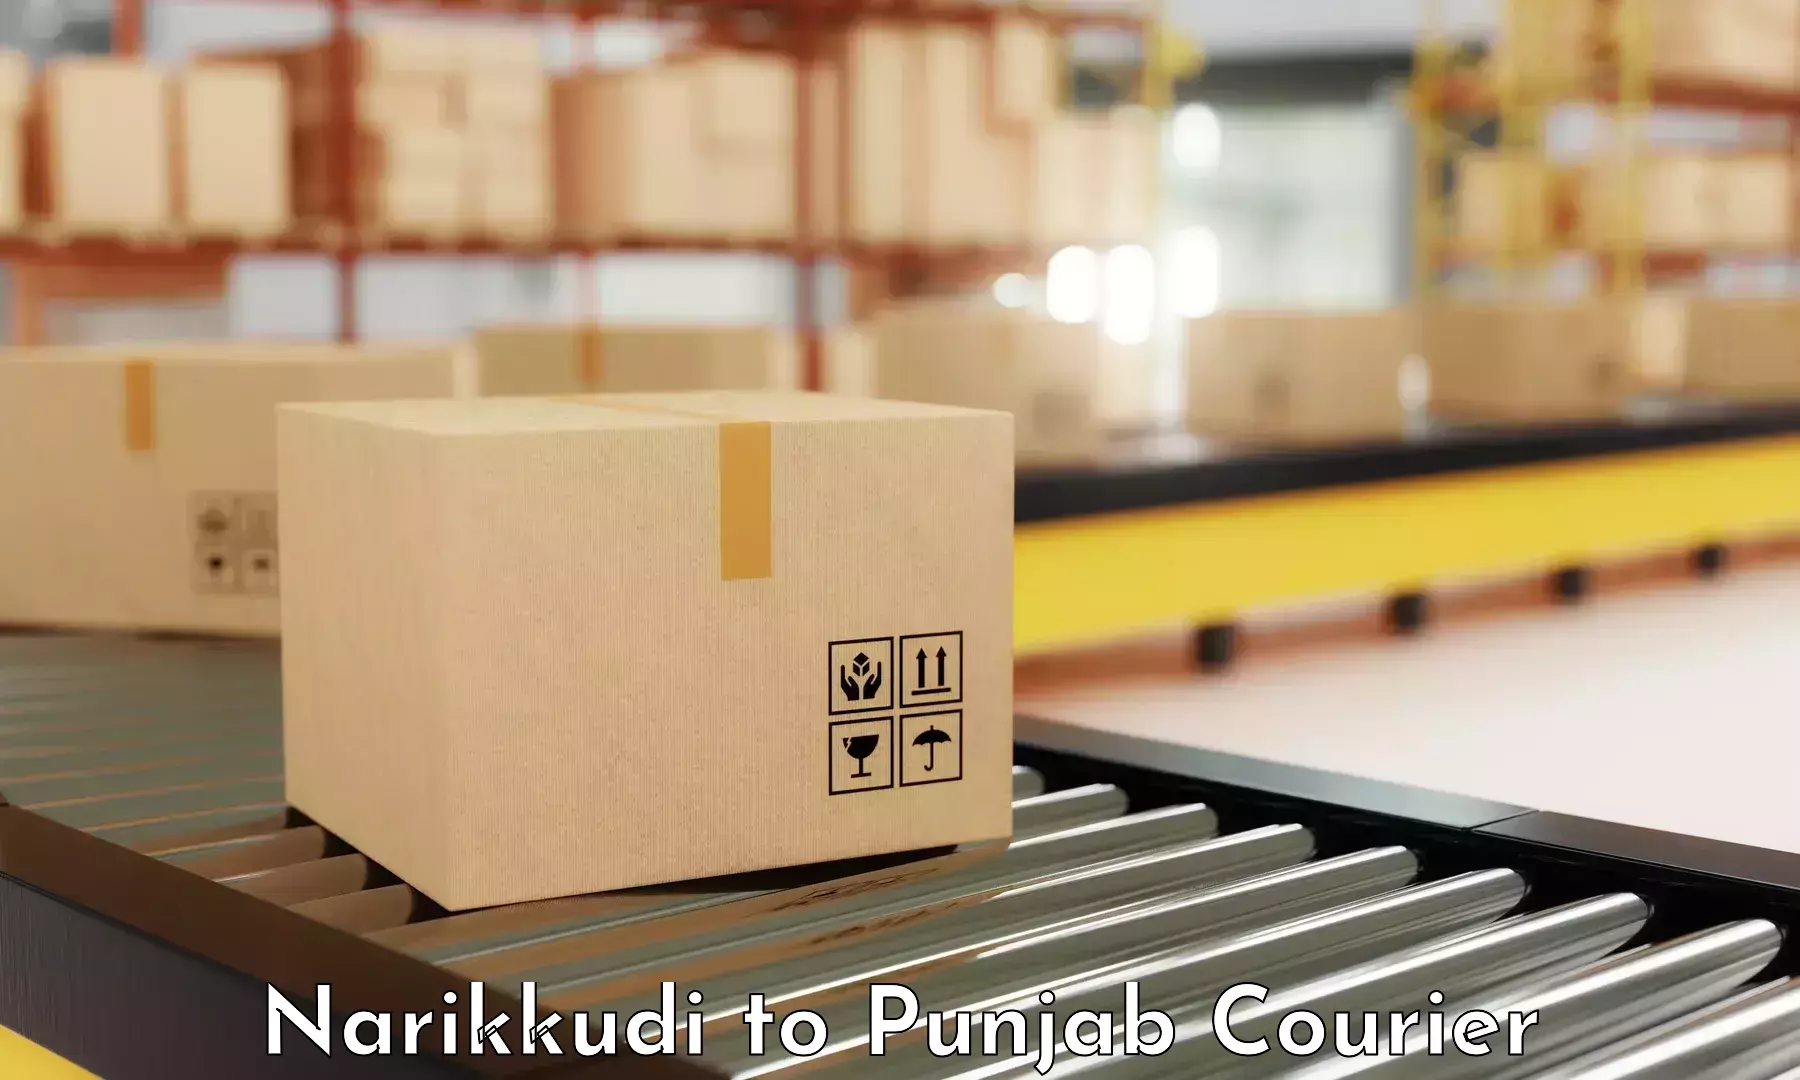 Efficient parcel tracking Narikkudi to Nangal